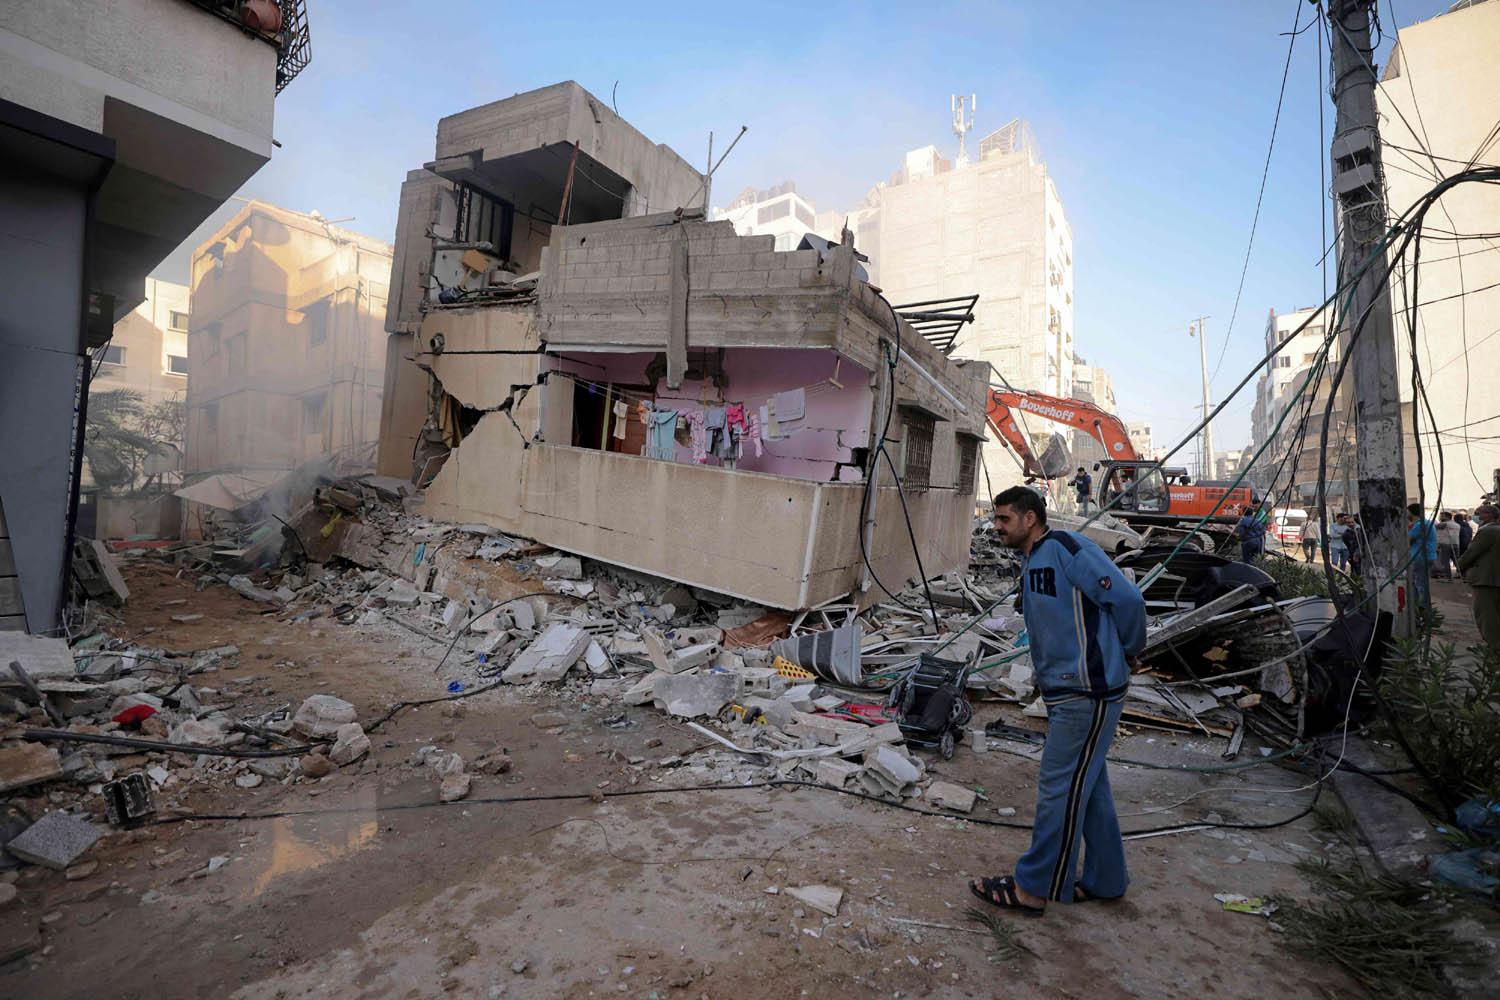 فلسطيني يقف بجانب منزل تم تدميره في غراة اسرائيلية في غزة